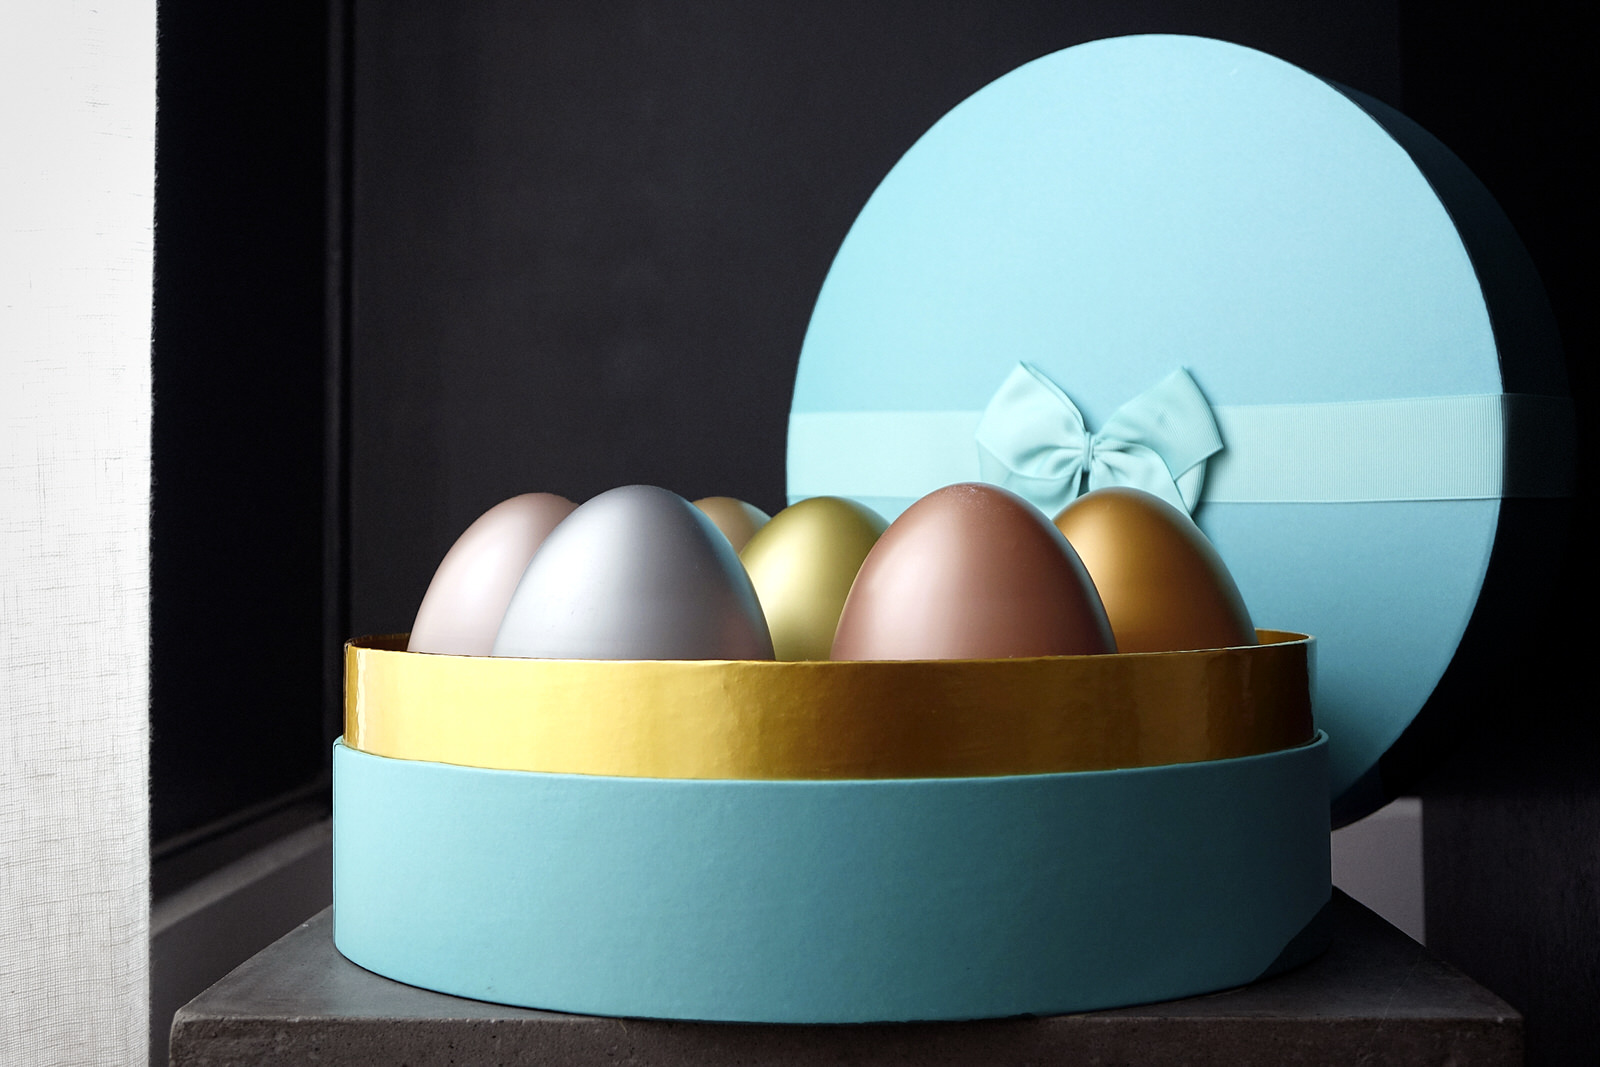 Le contenu du beauty egg de lookfantastic pour pâques 2019